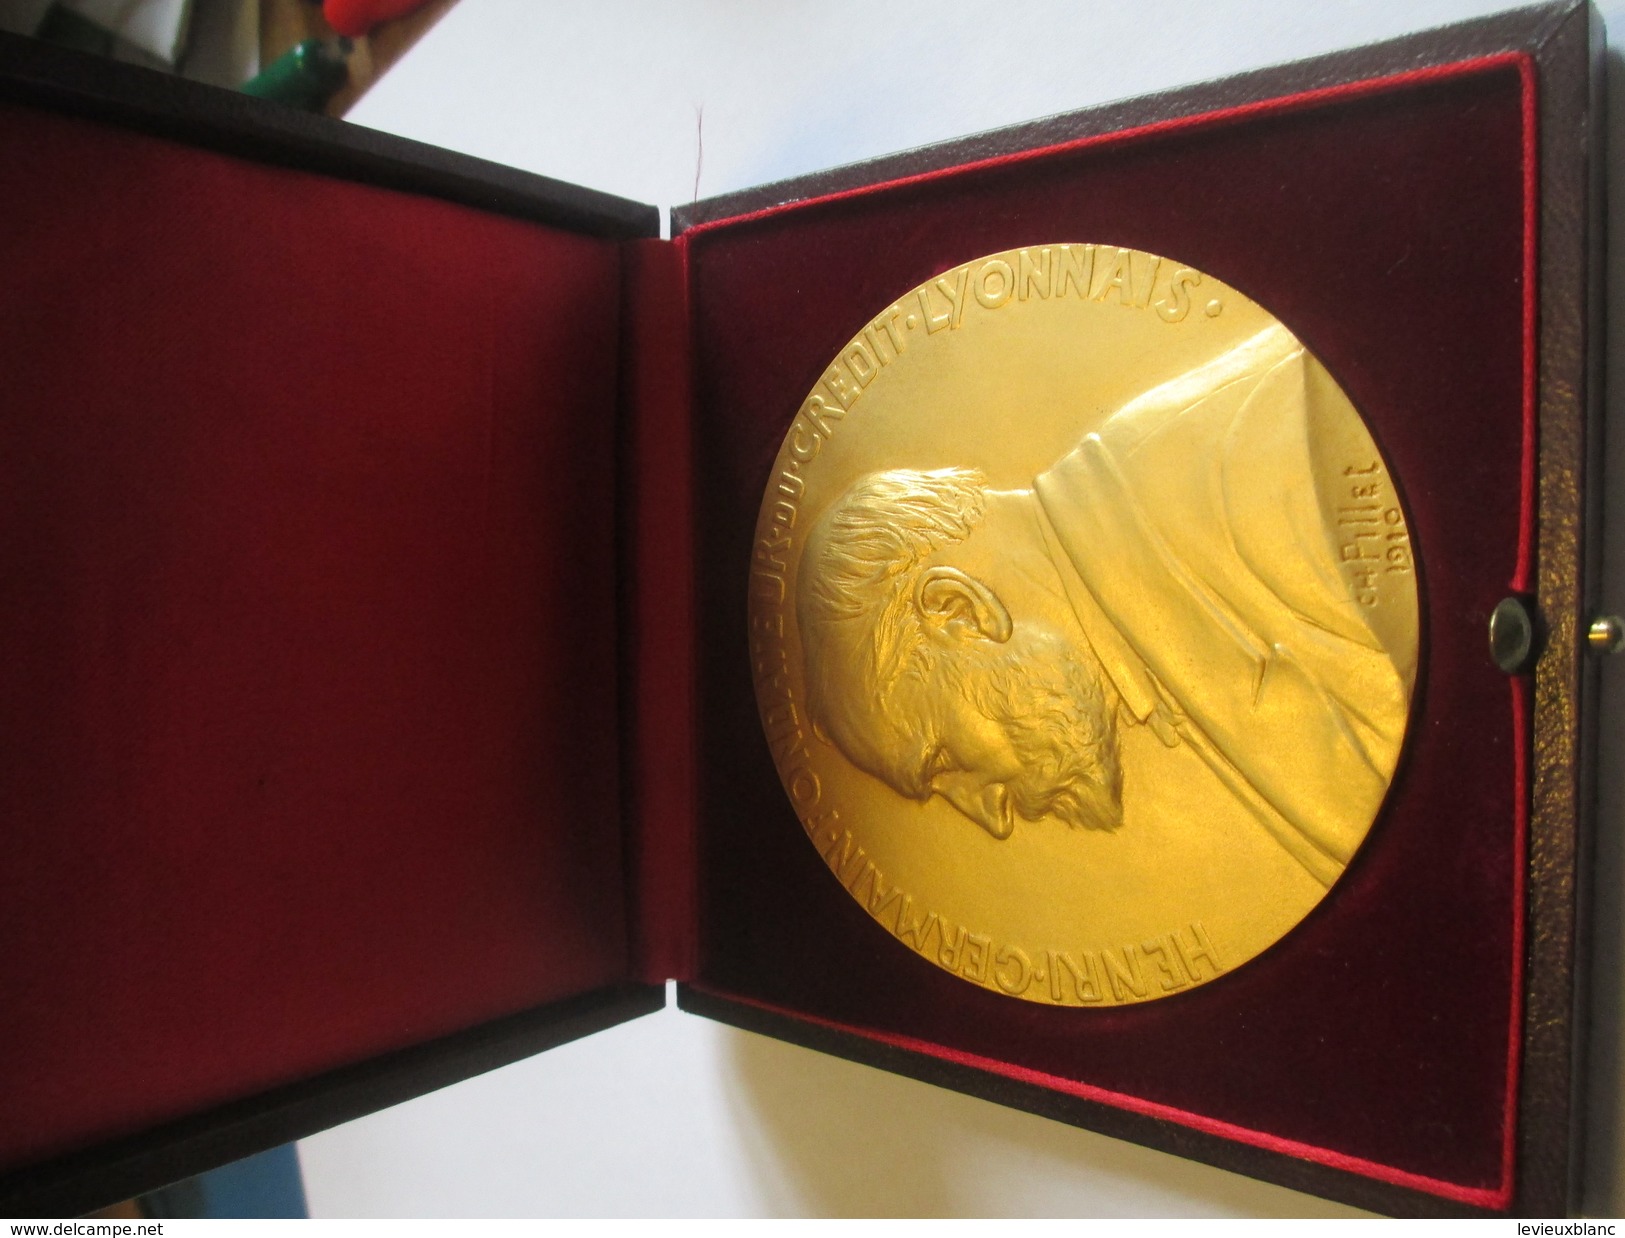 Médaille De Table/ Henri Germain Fondateur  Crédit Lyonnais/25 Années De Service/Pierre Dirson/Pillet/ Vers1970   MED149 - Frankreich